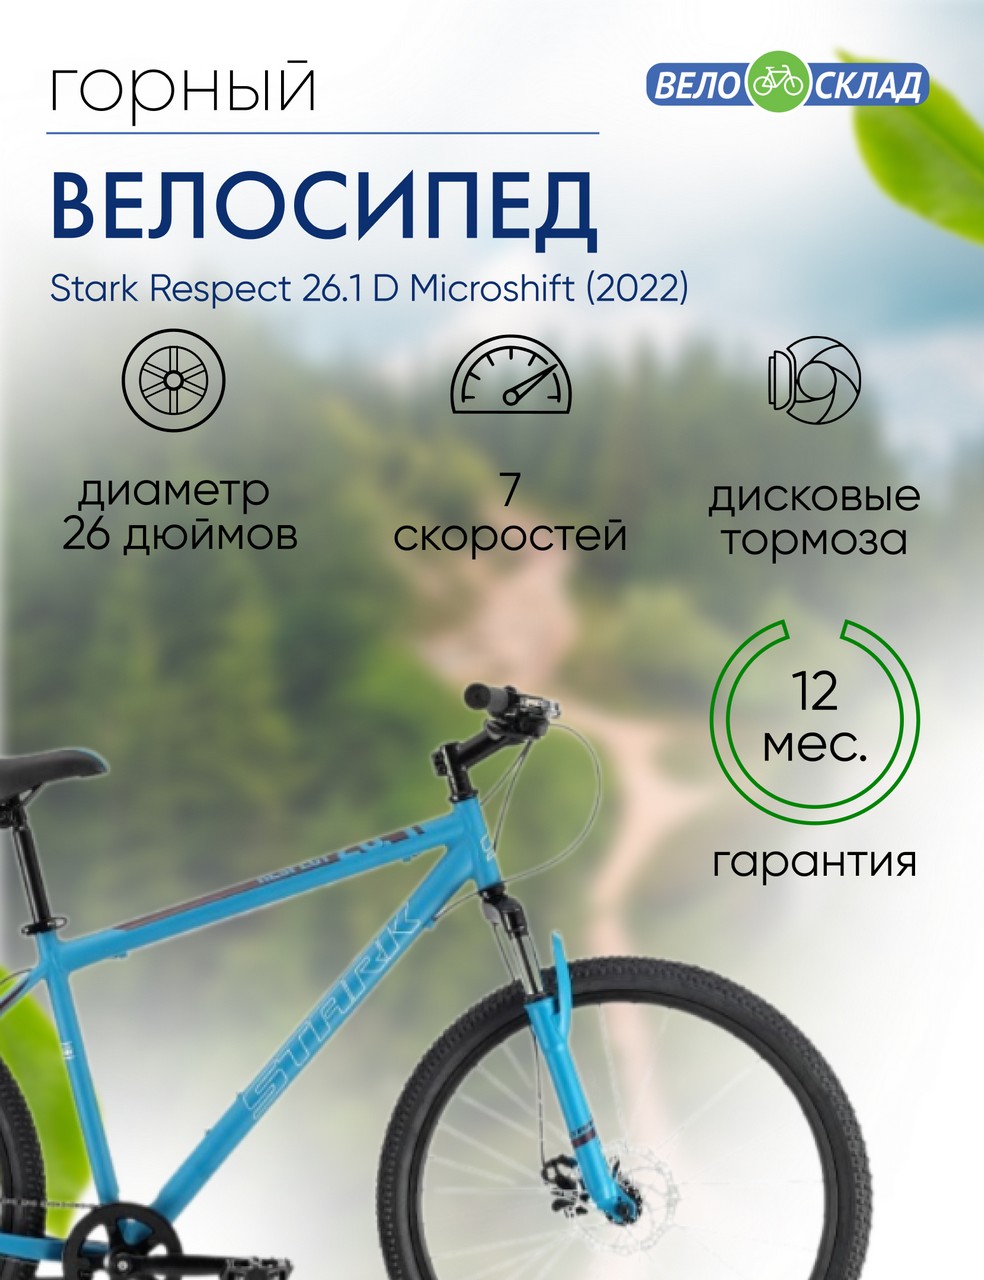 Горный велосипед Stark Respect 26.1 D Microshift, год 2022, цвет Синий-Черный, ростовка 20